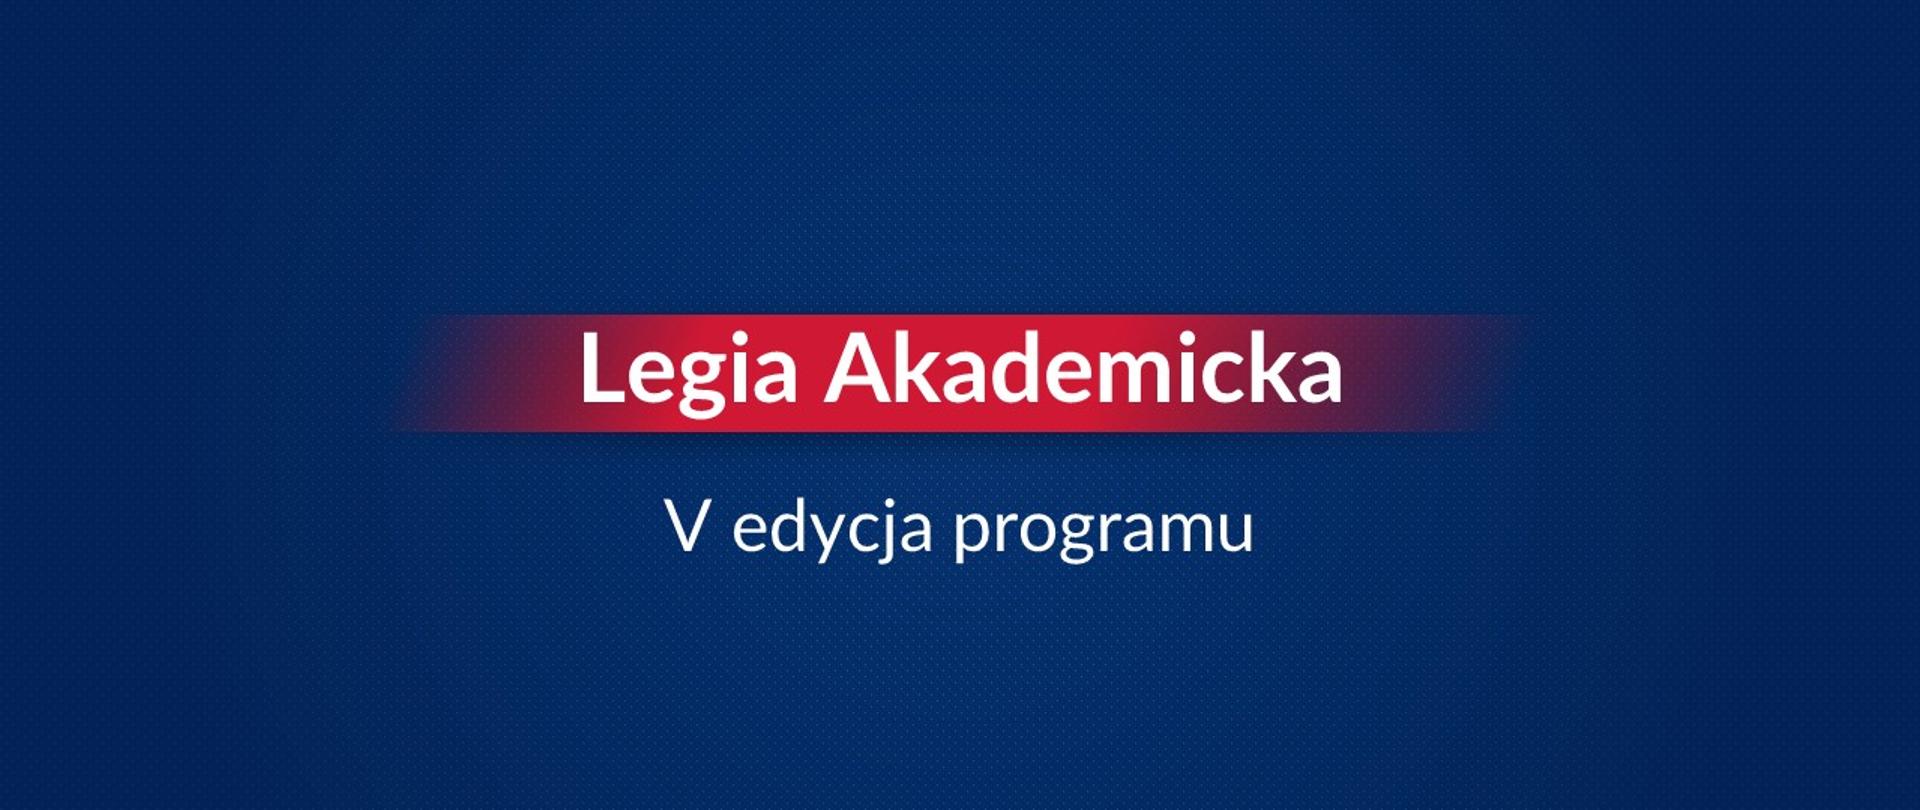 Legia Akademicka, logo Legii Akademickiej na granatowym tle